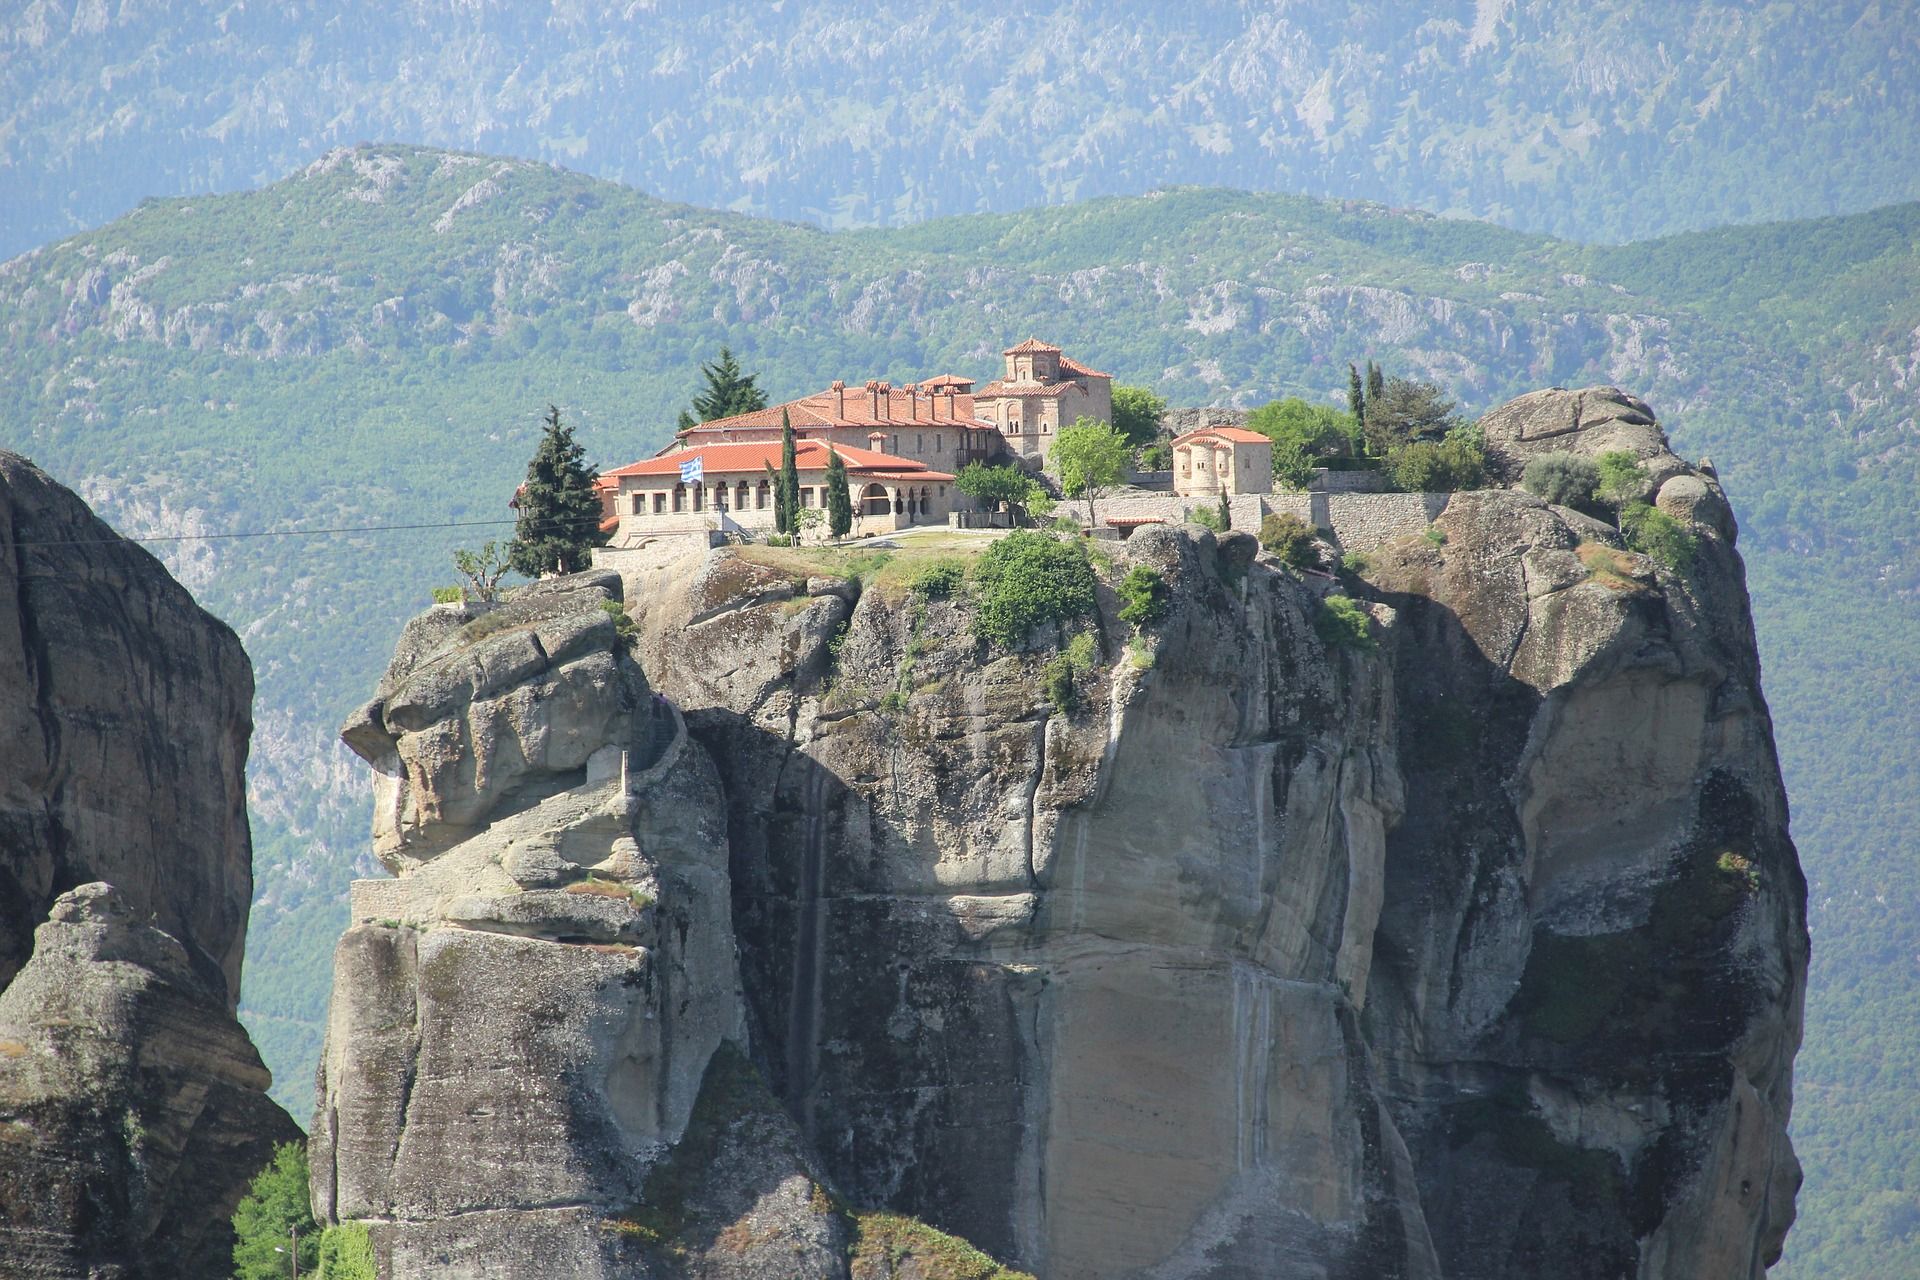 Meteora klooster - Fly-drive door Noord-Griekenland